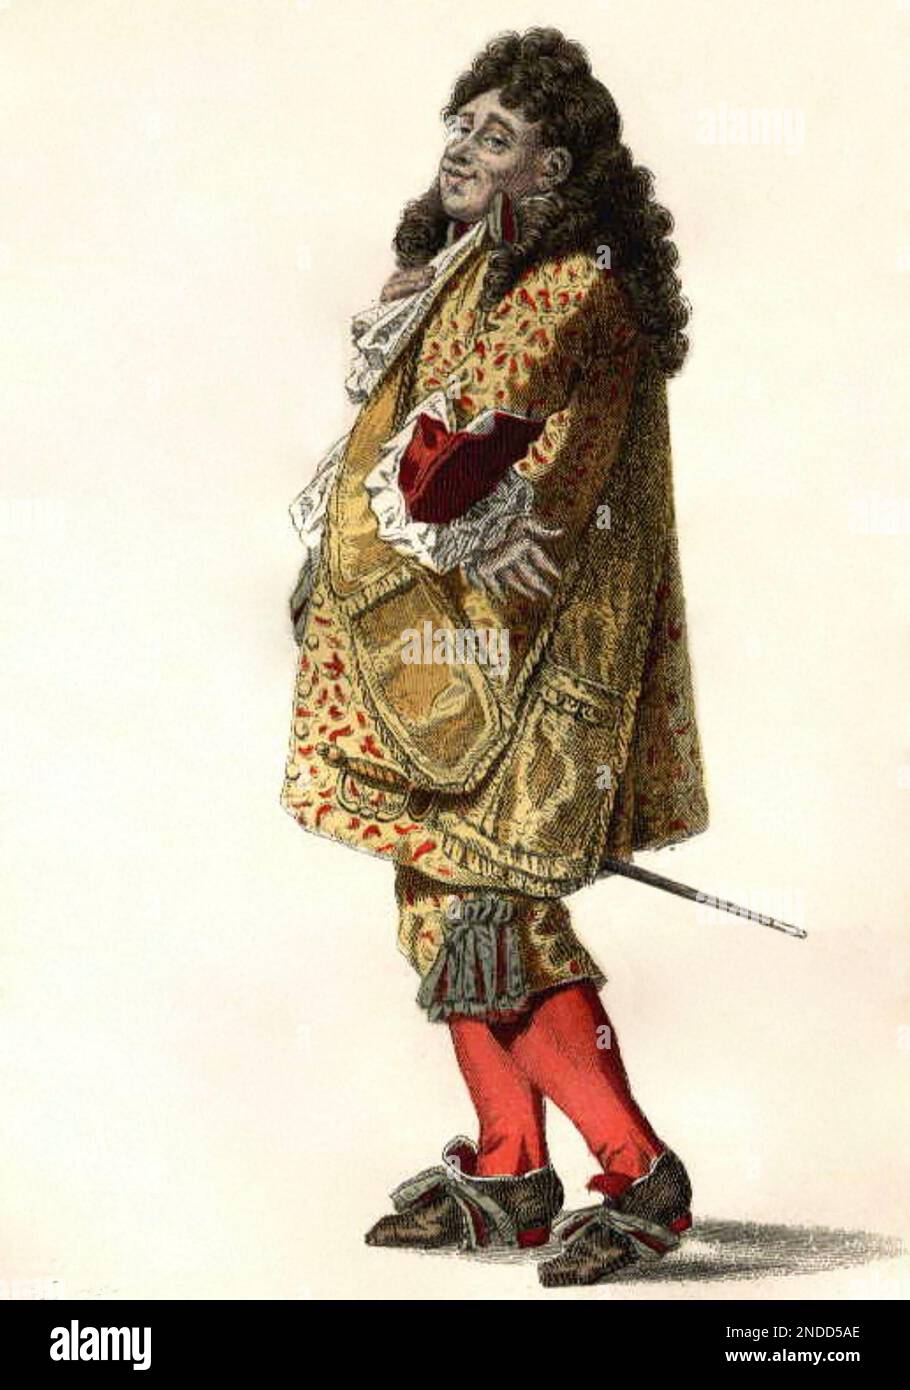 LE BOURGEOIS GENTILHOMME le caractère de Mone. Jourdain de Molière de la pièce du même titre dans une illustration de 19th siècle Banque D'Images